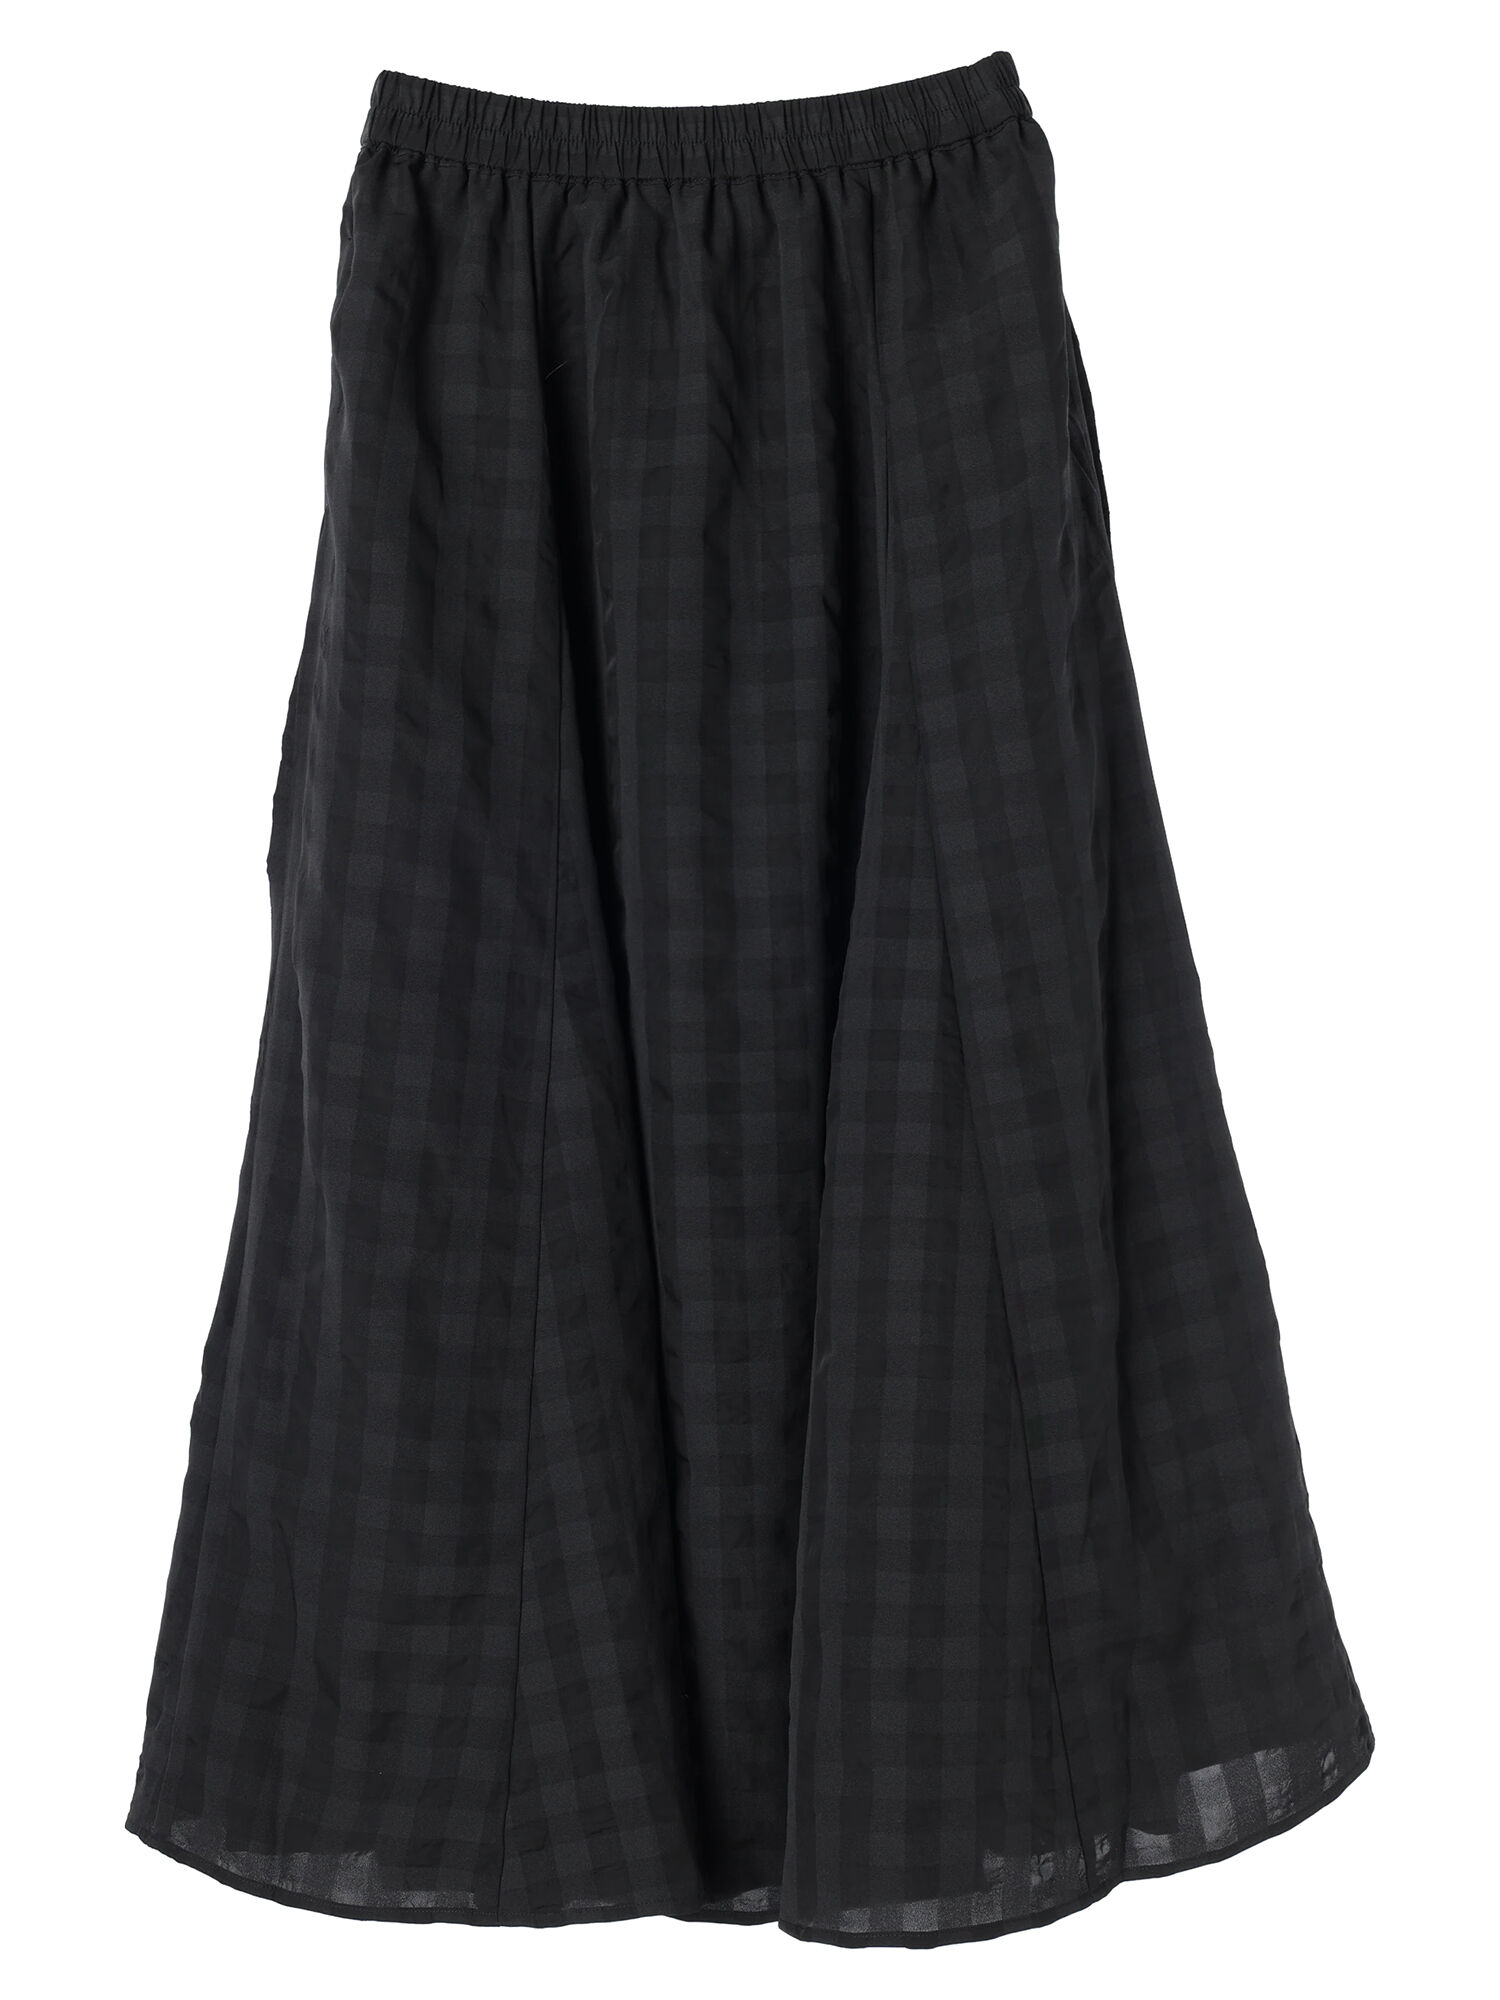 公式直販AMARC【数量限定予約販売】ジャガードギャザースカート(ブラック/S) スカート